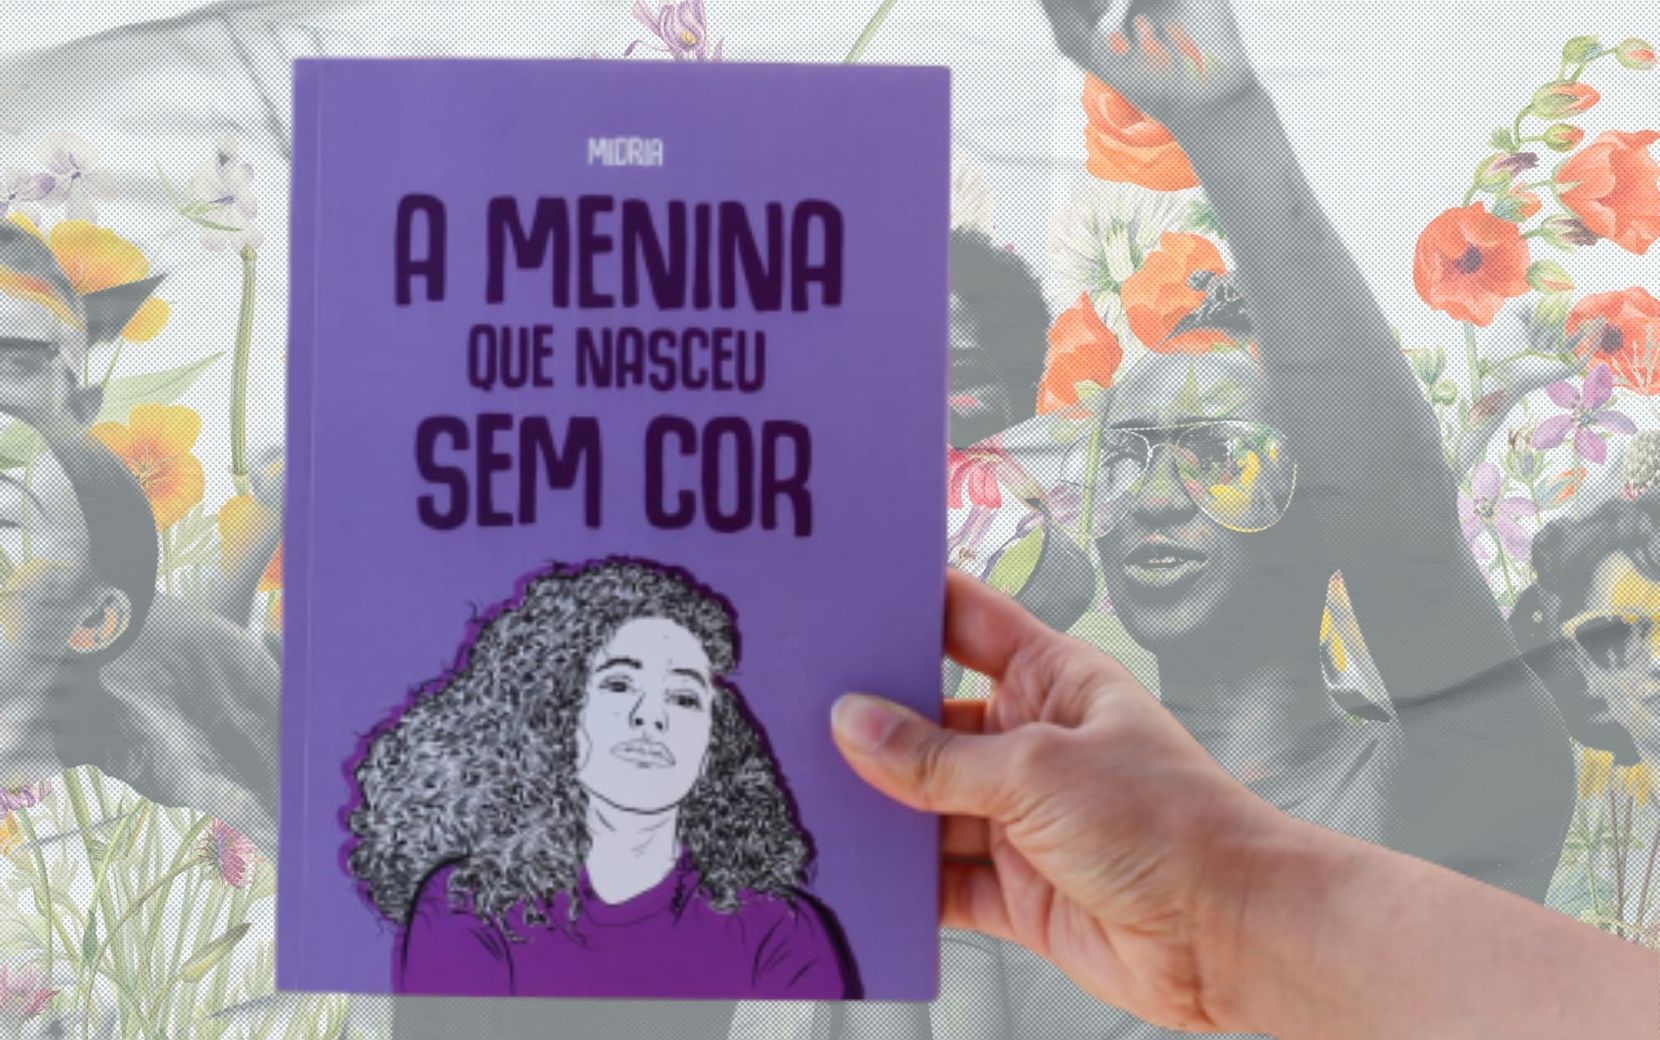 Midria, autora de "A Menina que Nasceu sem Cor", fala sobre ações antirracistas para incorporar no cotidiano